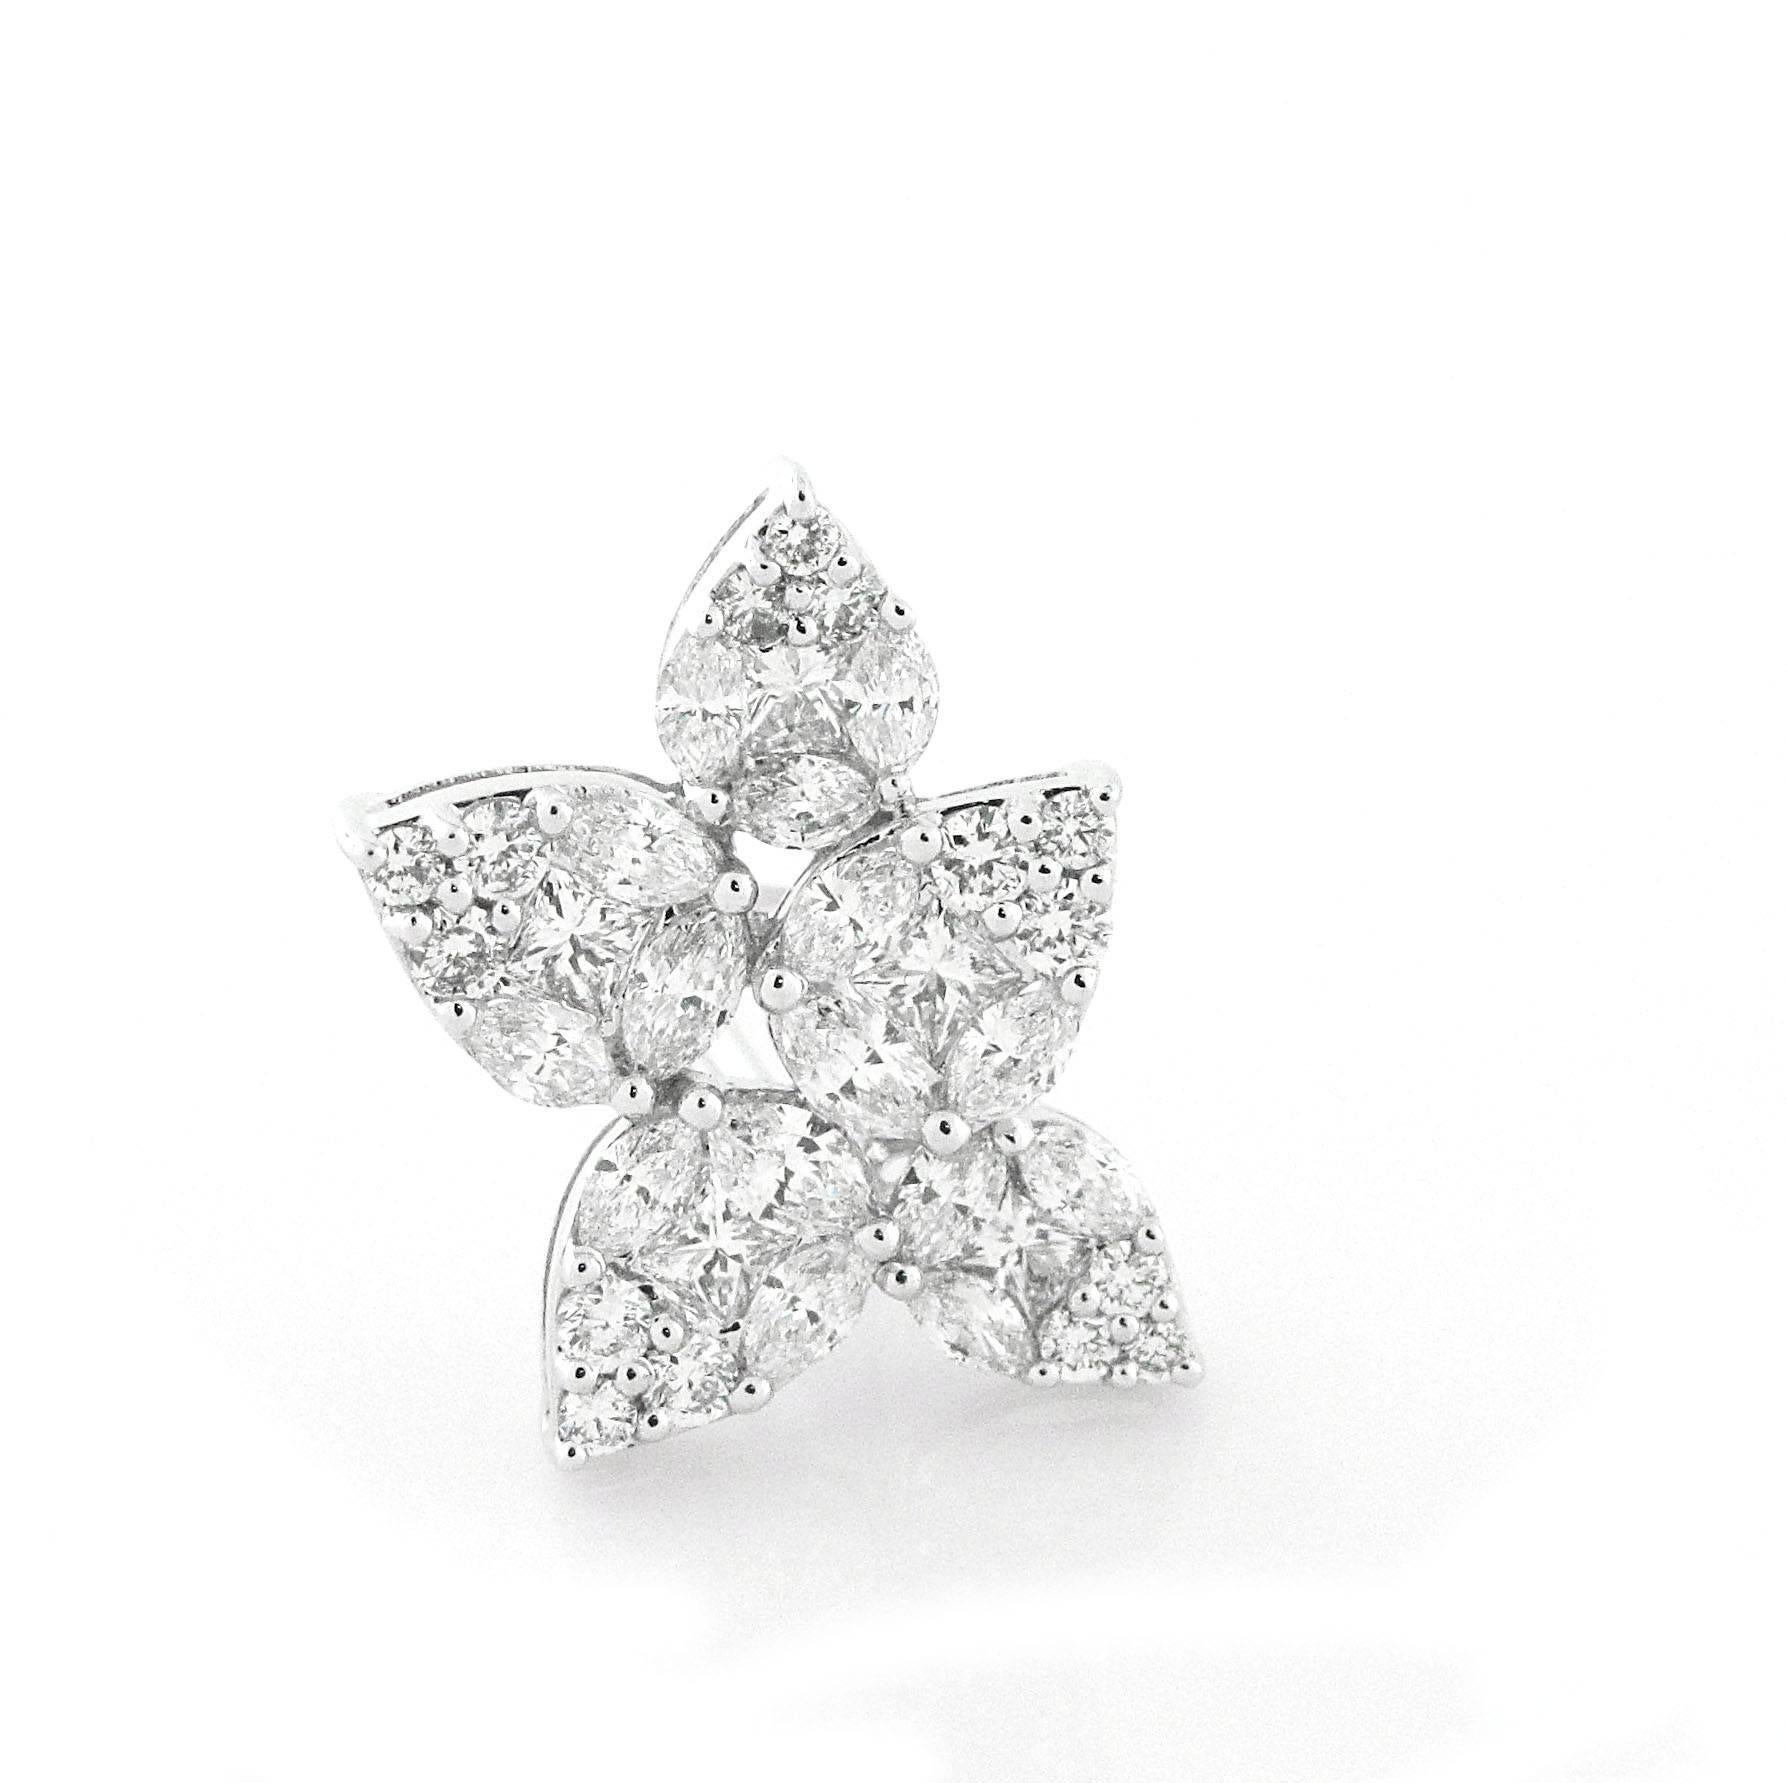 Ähnlich wie das kultige Harry Winston-Cluster-Design sind diese Ohrringe mit marquise und runden Diamanten besetzt, die die Illusion eines größeren birnenförmigen Diamanten erzeugen.  Das Gesamtgewicht wird auf 4 Karat geschätzt.  aus strahlend